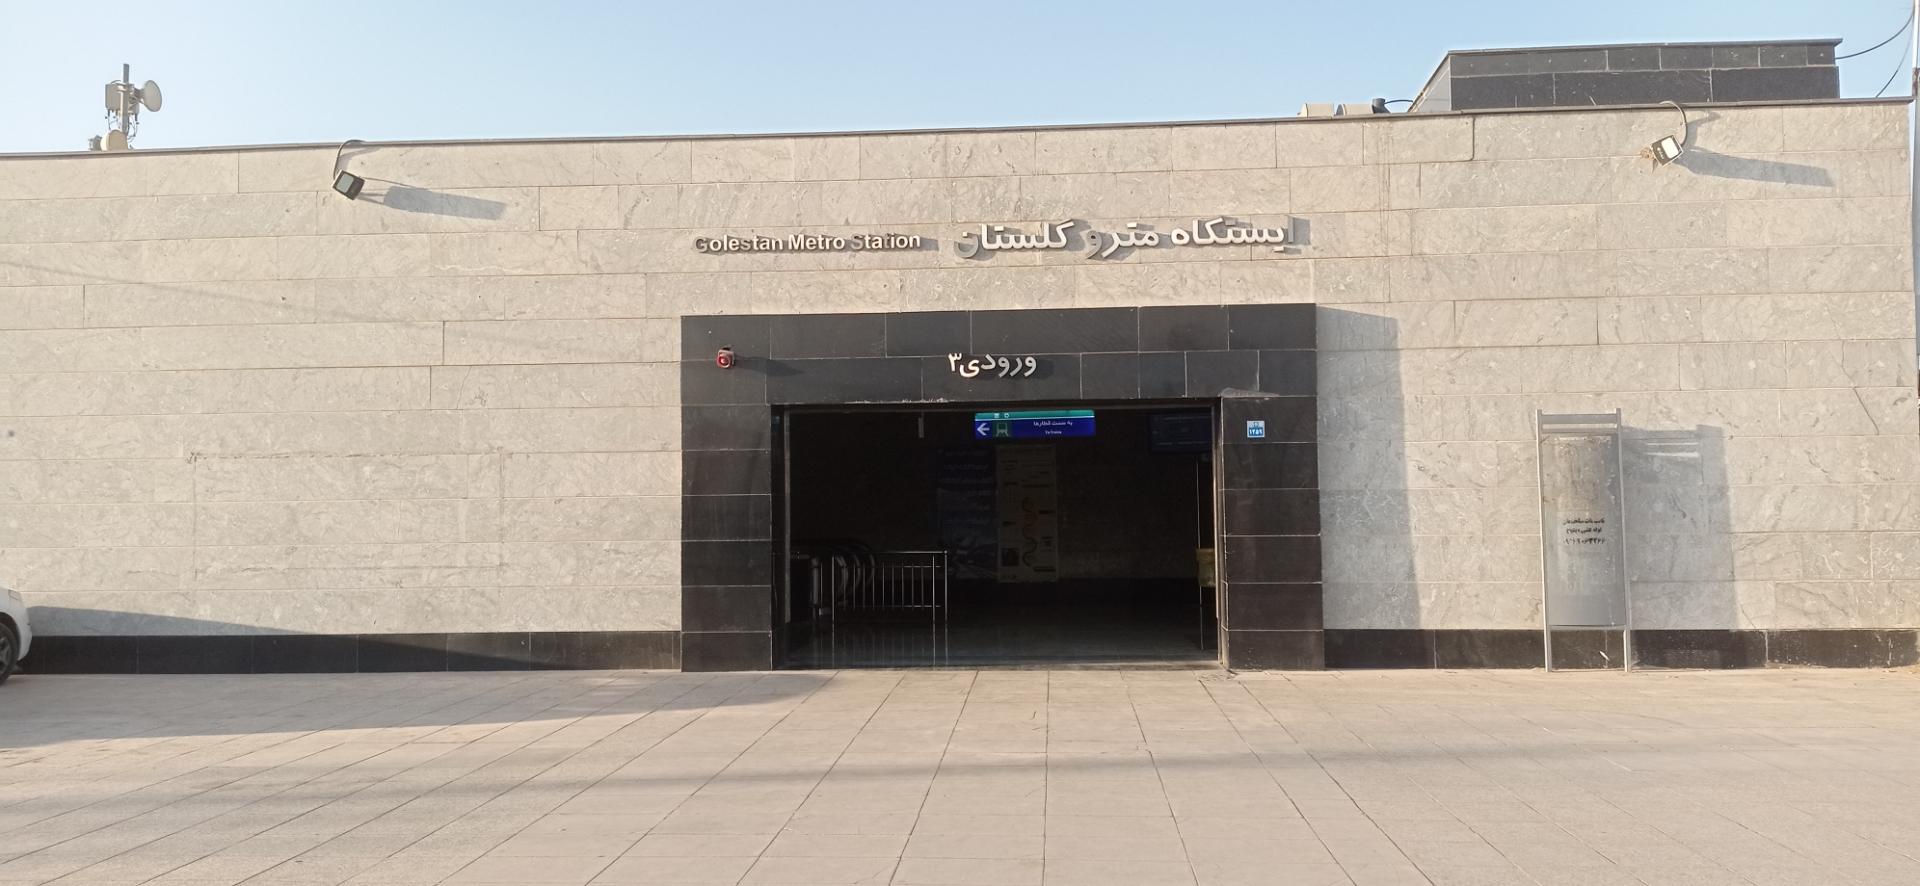 عکس ایستگاه مترو گلستان